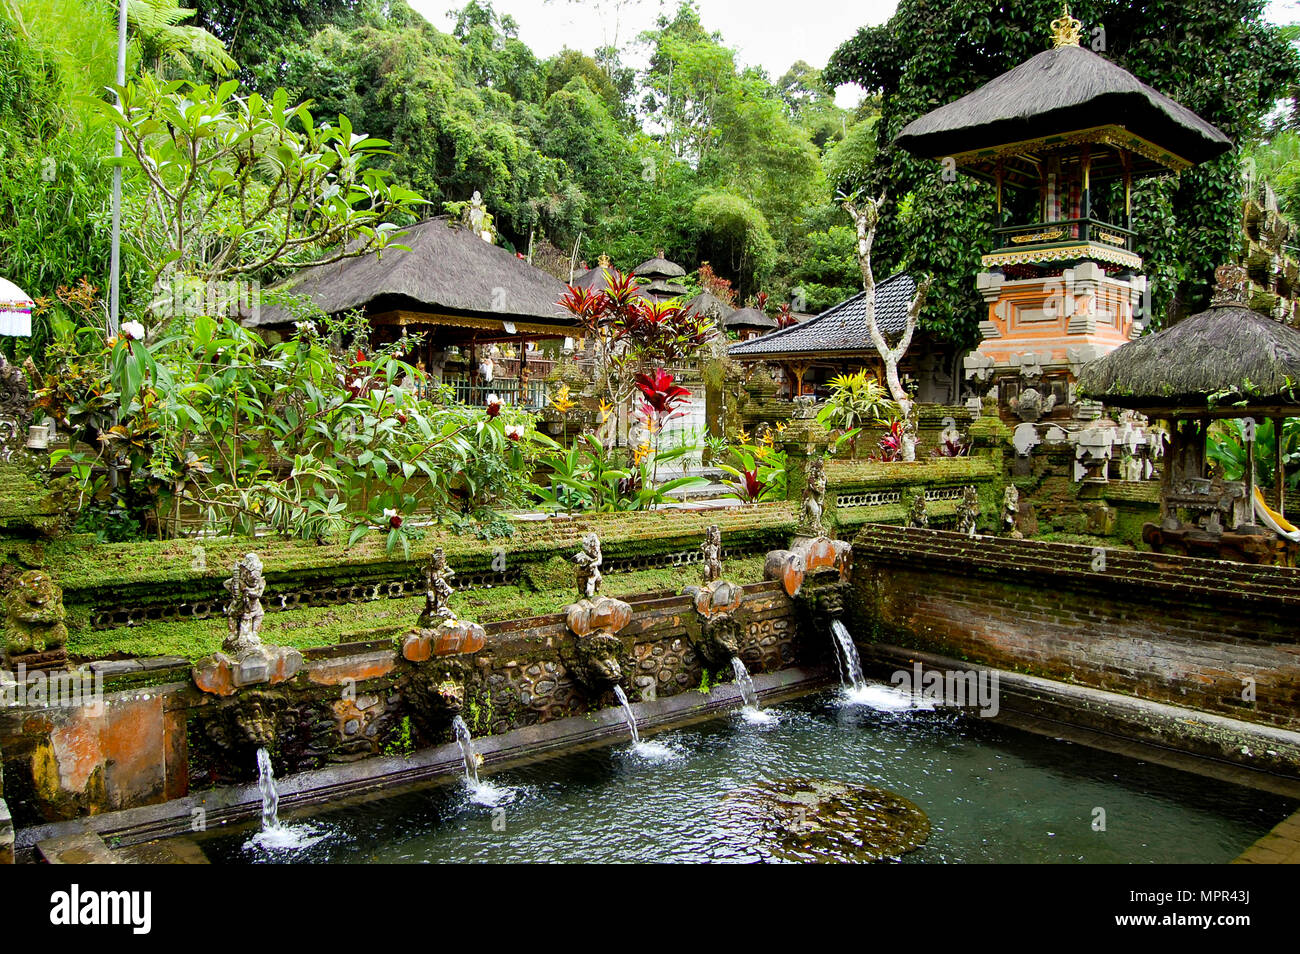 Gunung Kawi Temple - Bali - Indonesia Stock Photo